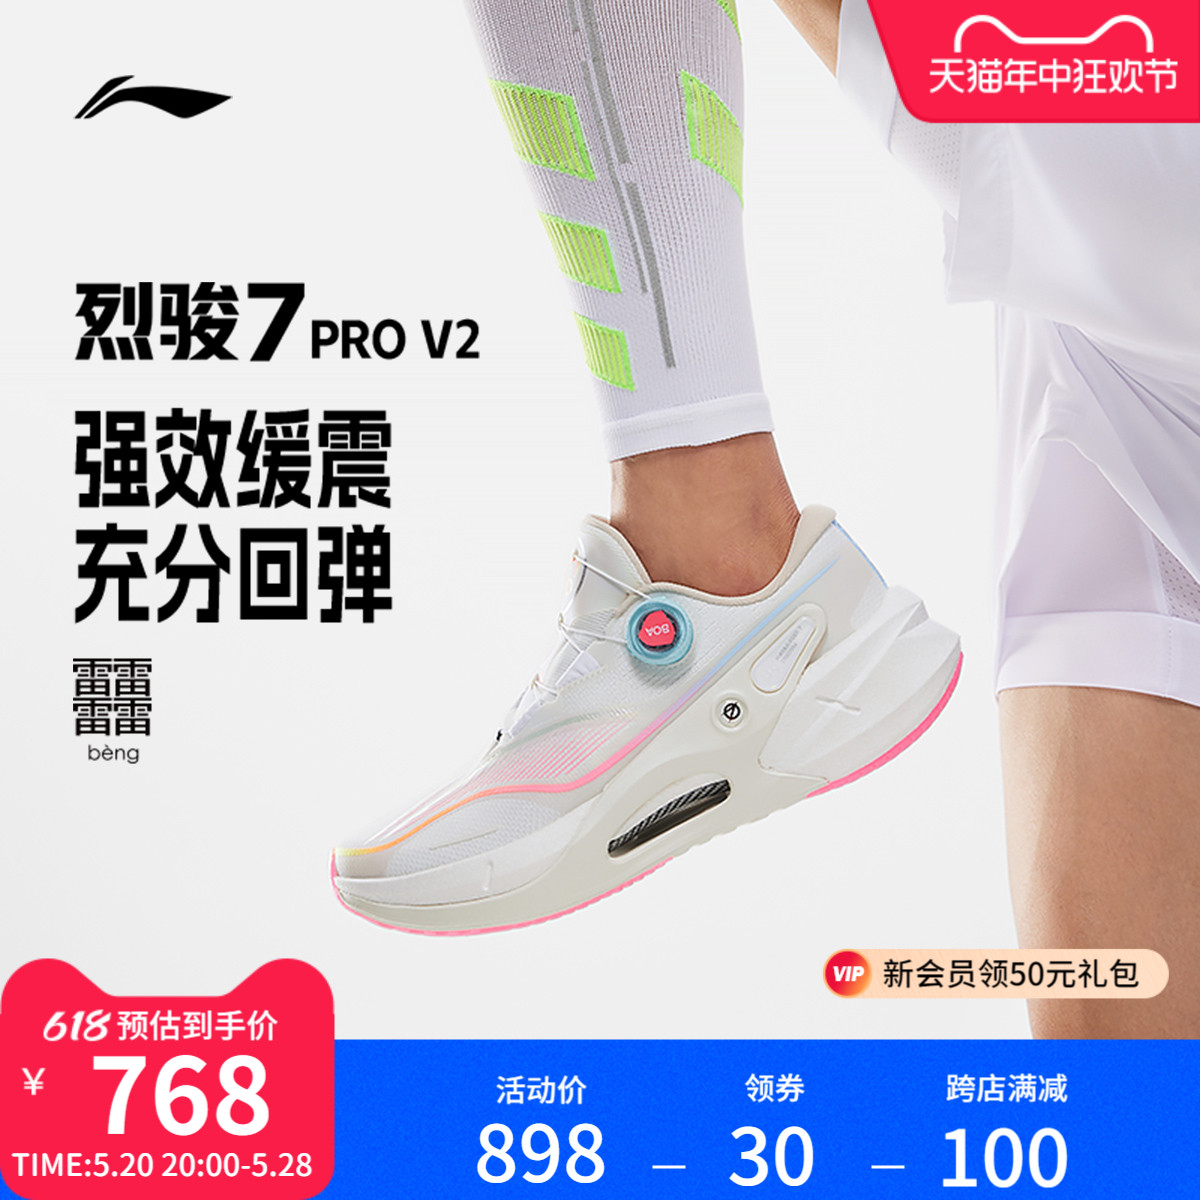 李宁烈骏7PRO V2 | 跑步鞋